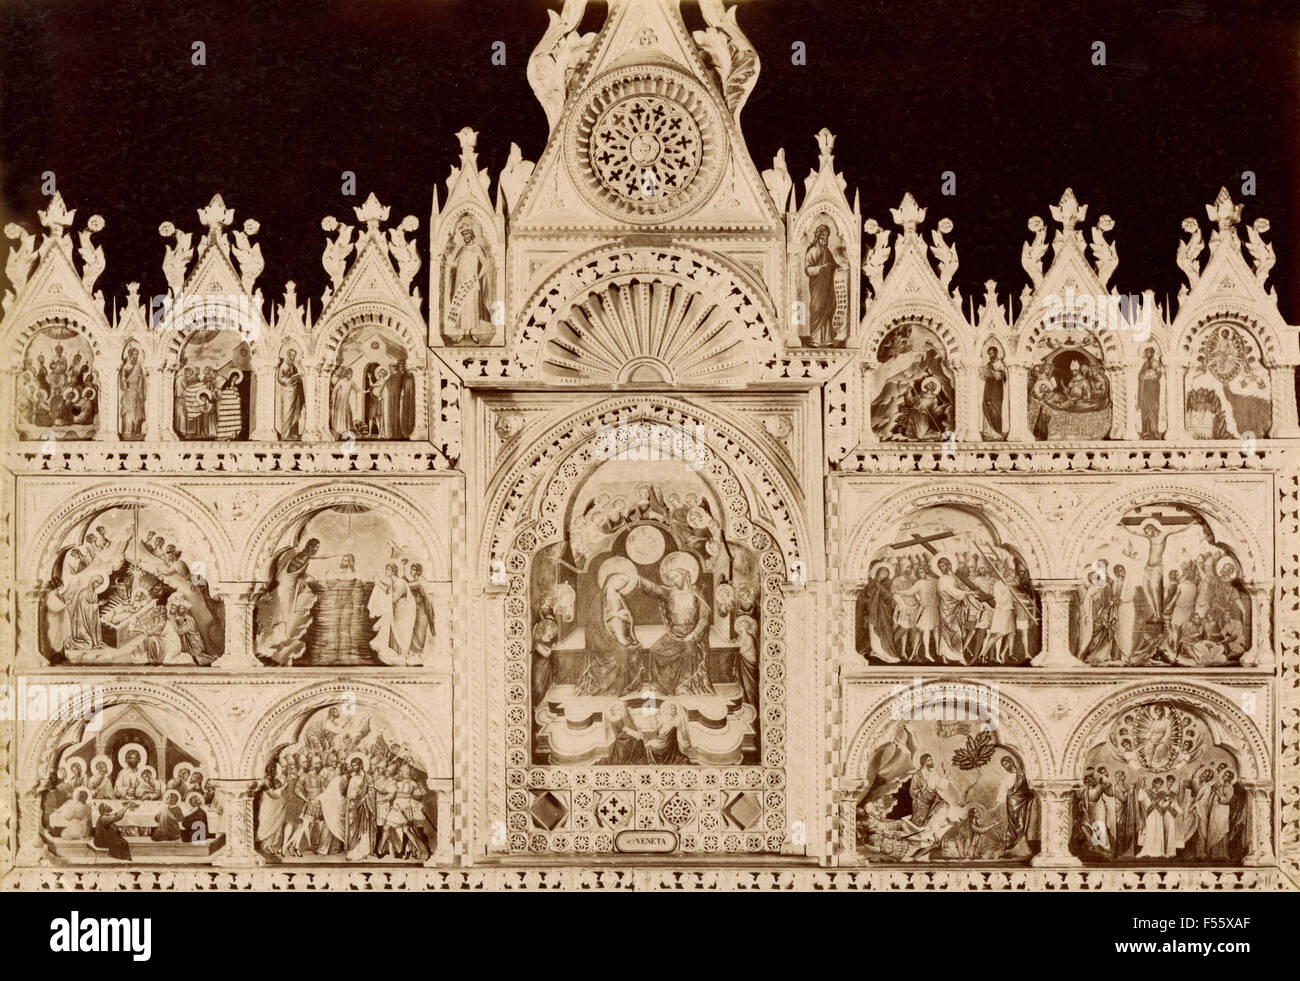 Akademie von Venedig, Ancona mit der Krönung der Jungfrau, die Seiten verschiedene Fakten des Lebens Jesu Christi, gemalt von Niccolò Semitecolo Stockfoto